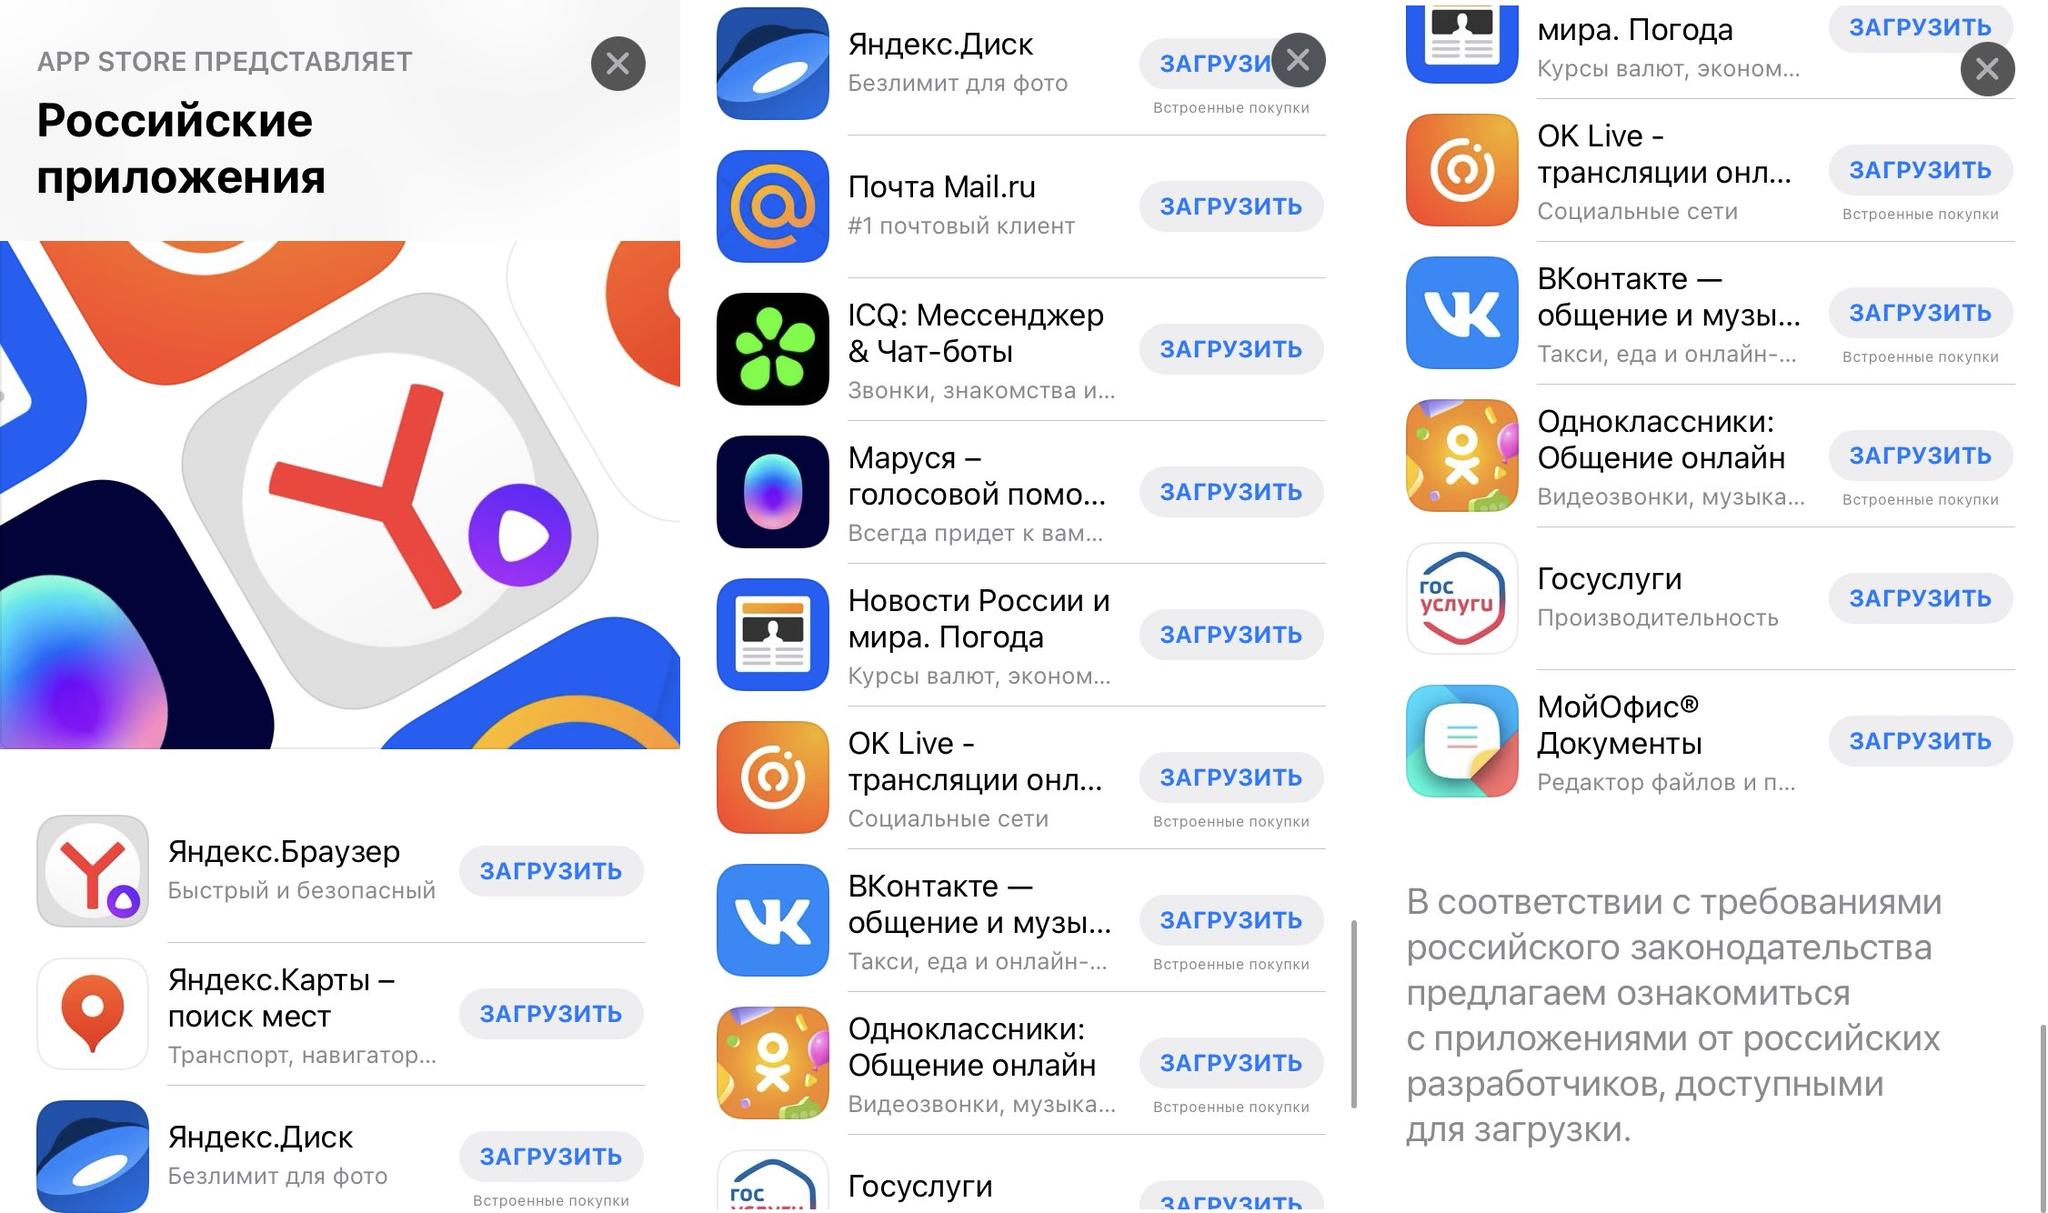 Приложения на айфон в россии